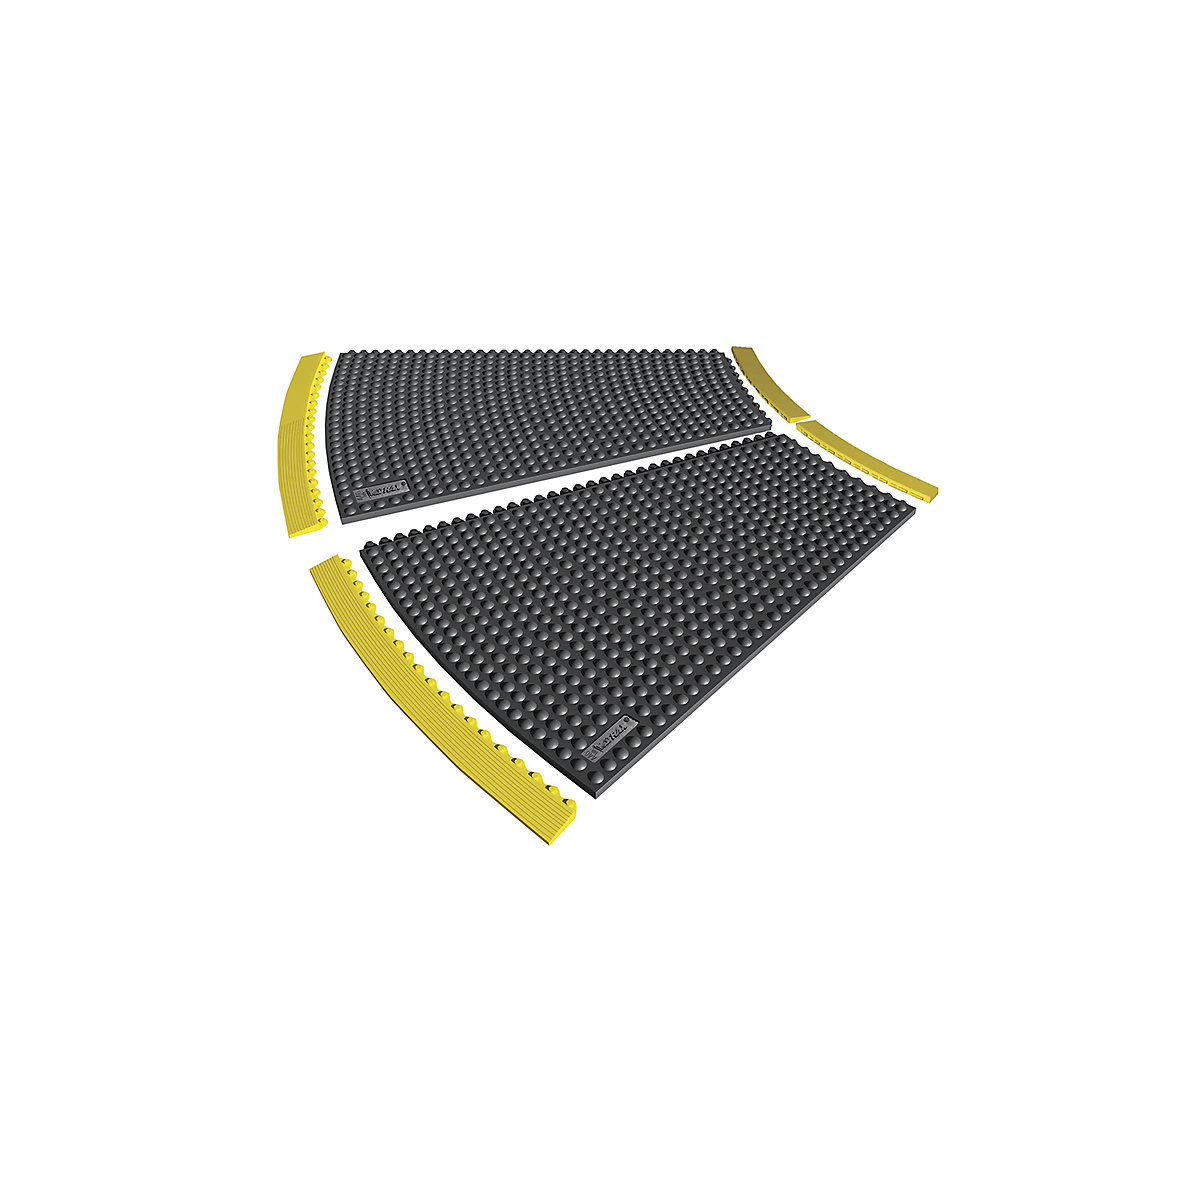 Talna plošča, naravna guma z vozlički, 22,5° – NOTRAX